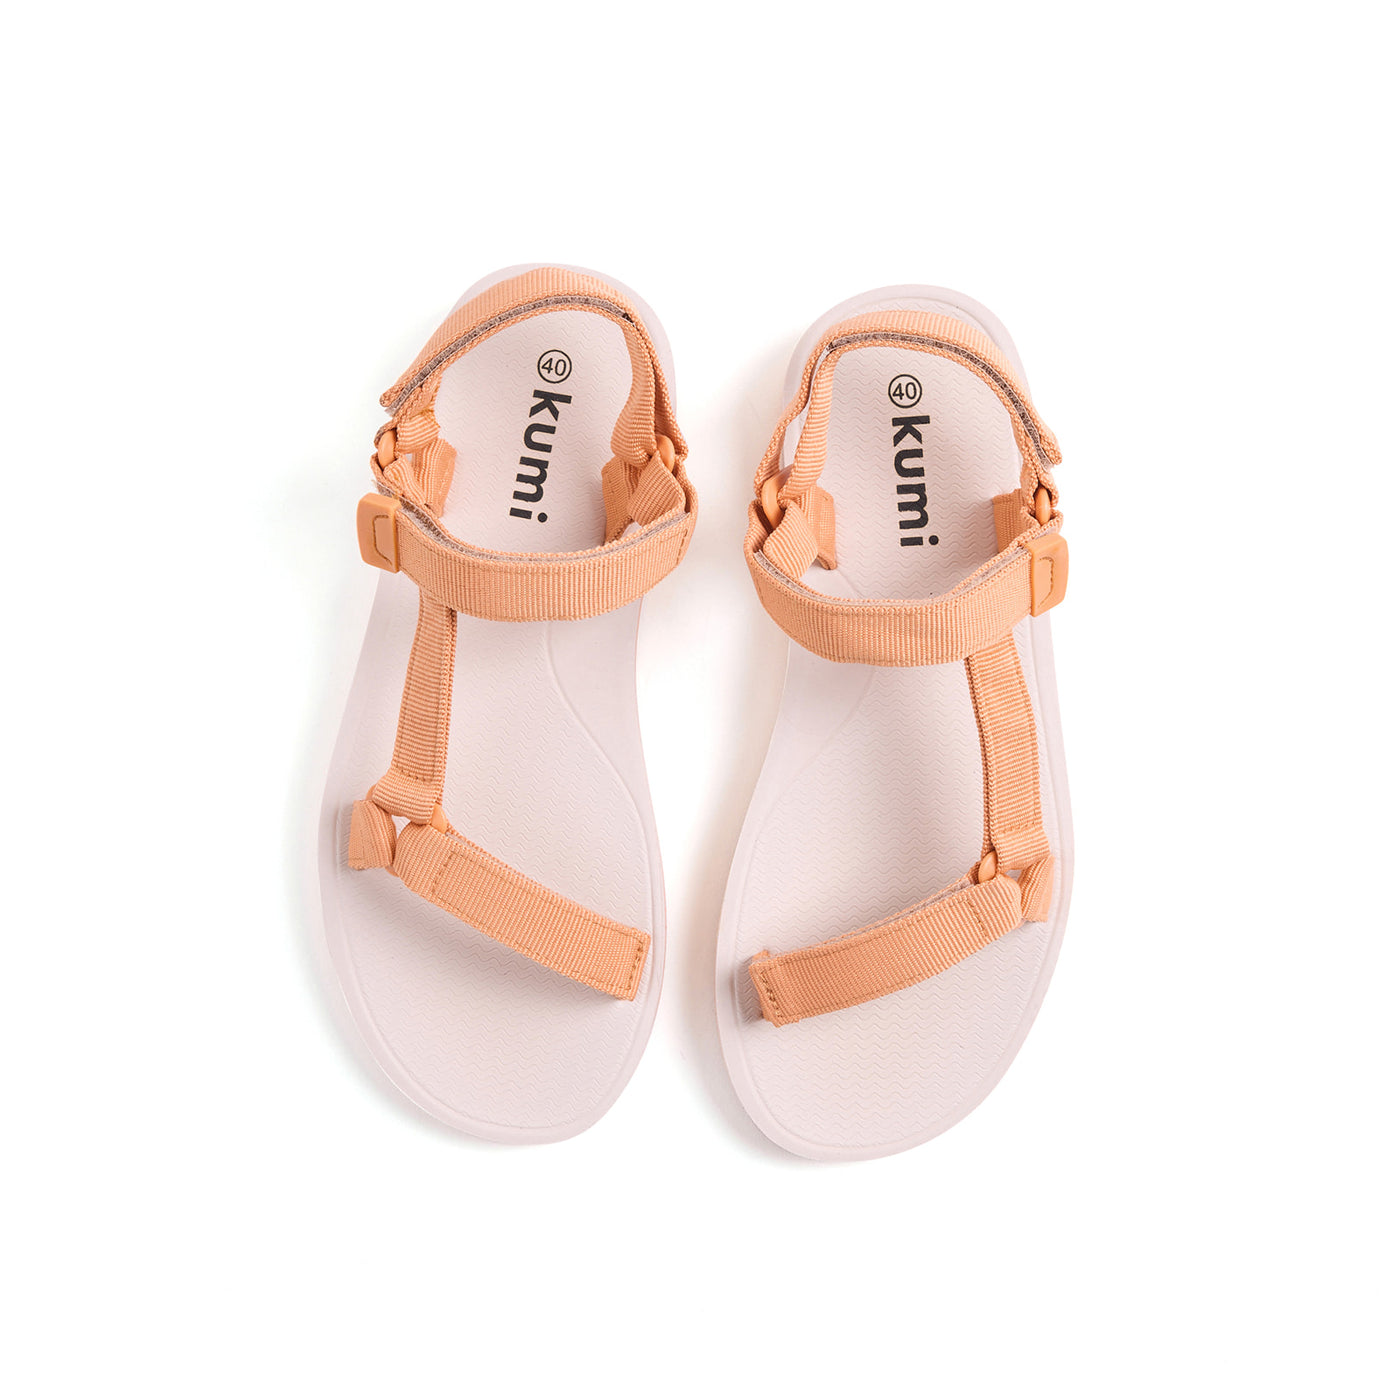 Peach Sandals